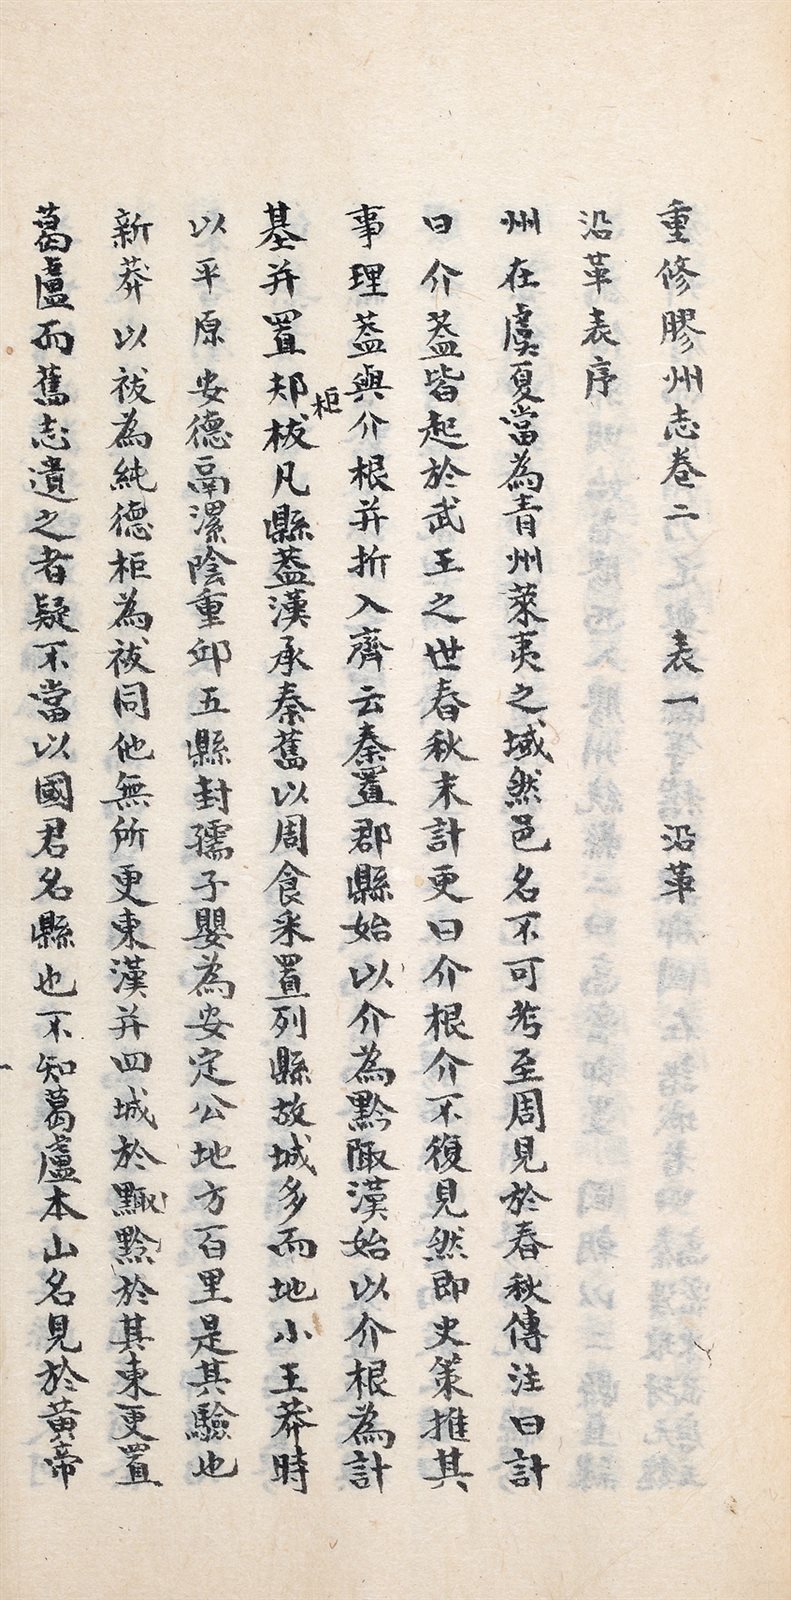 重修胶州志 (四十卷)
(清) 张同声重修